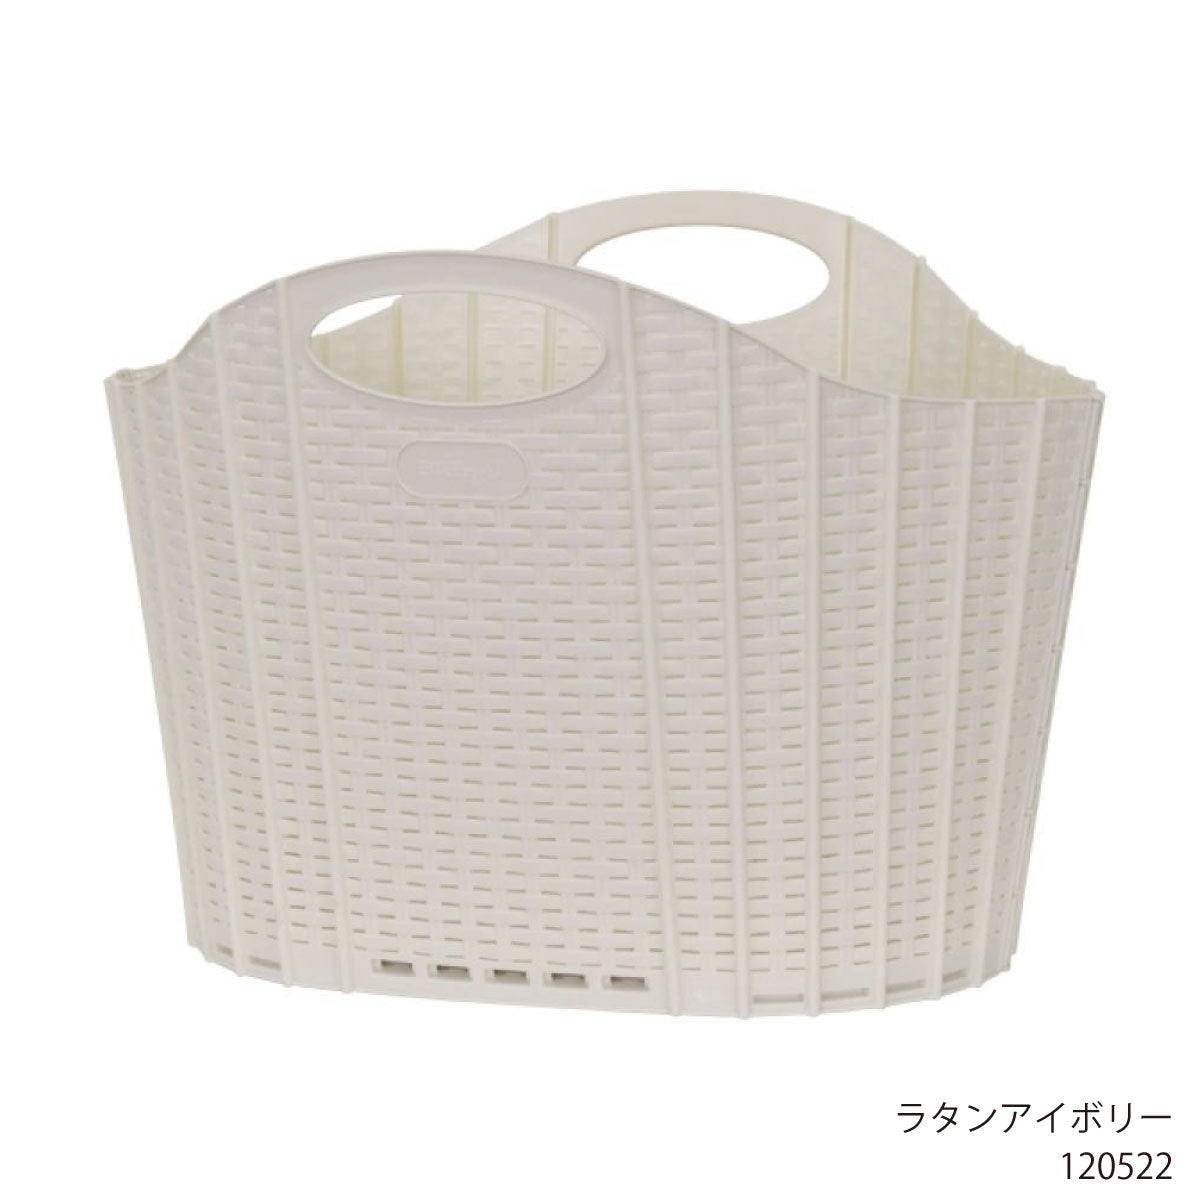 Foldable Laundry Basket Laundry Hamper Slim Laundry Bag Rattan Style Laundry Supplies Stylish